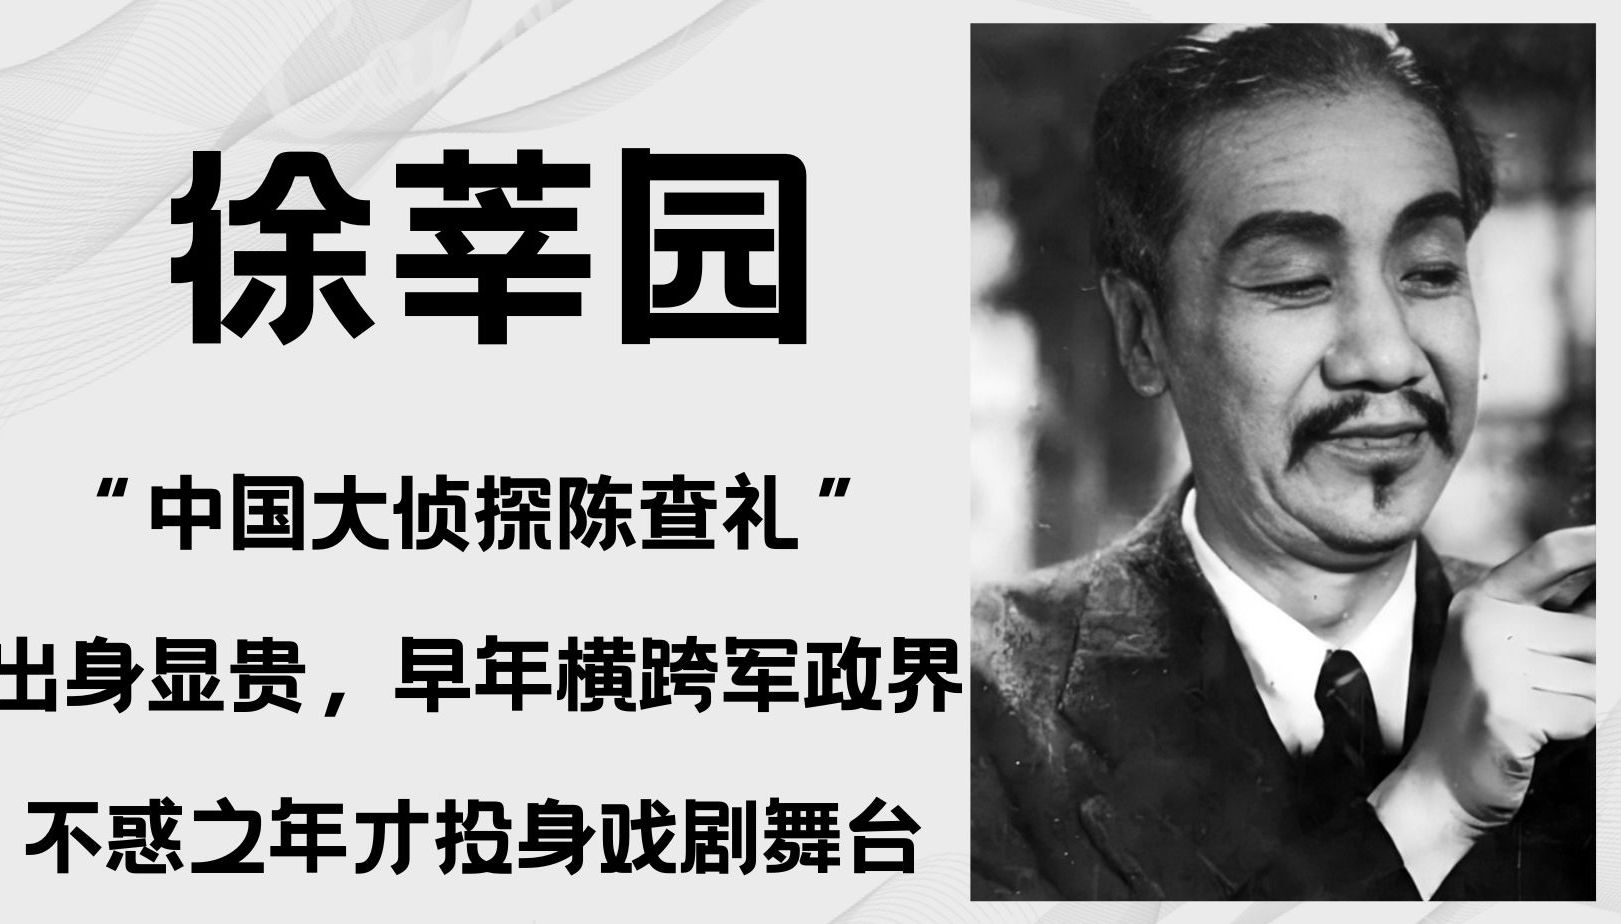 徐莘园，中国“大侦探陈查礼”，出身显贵，早年在军政界任职